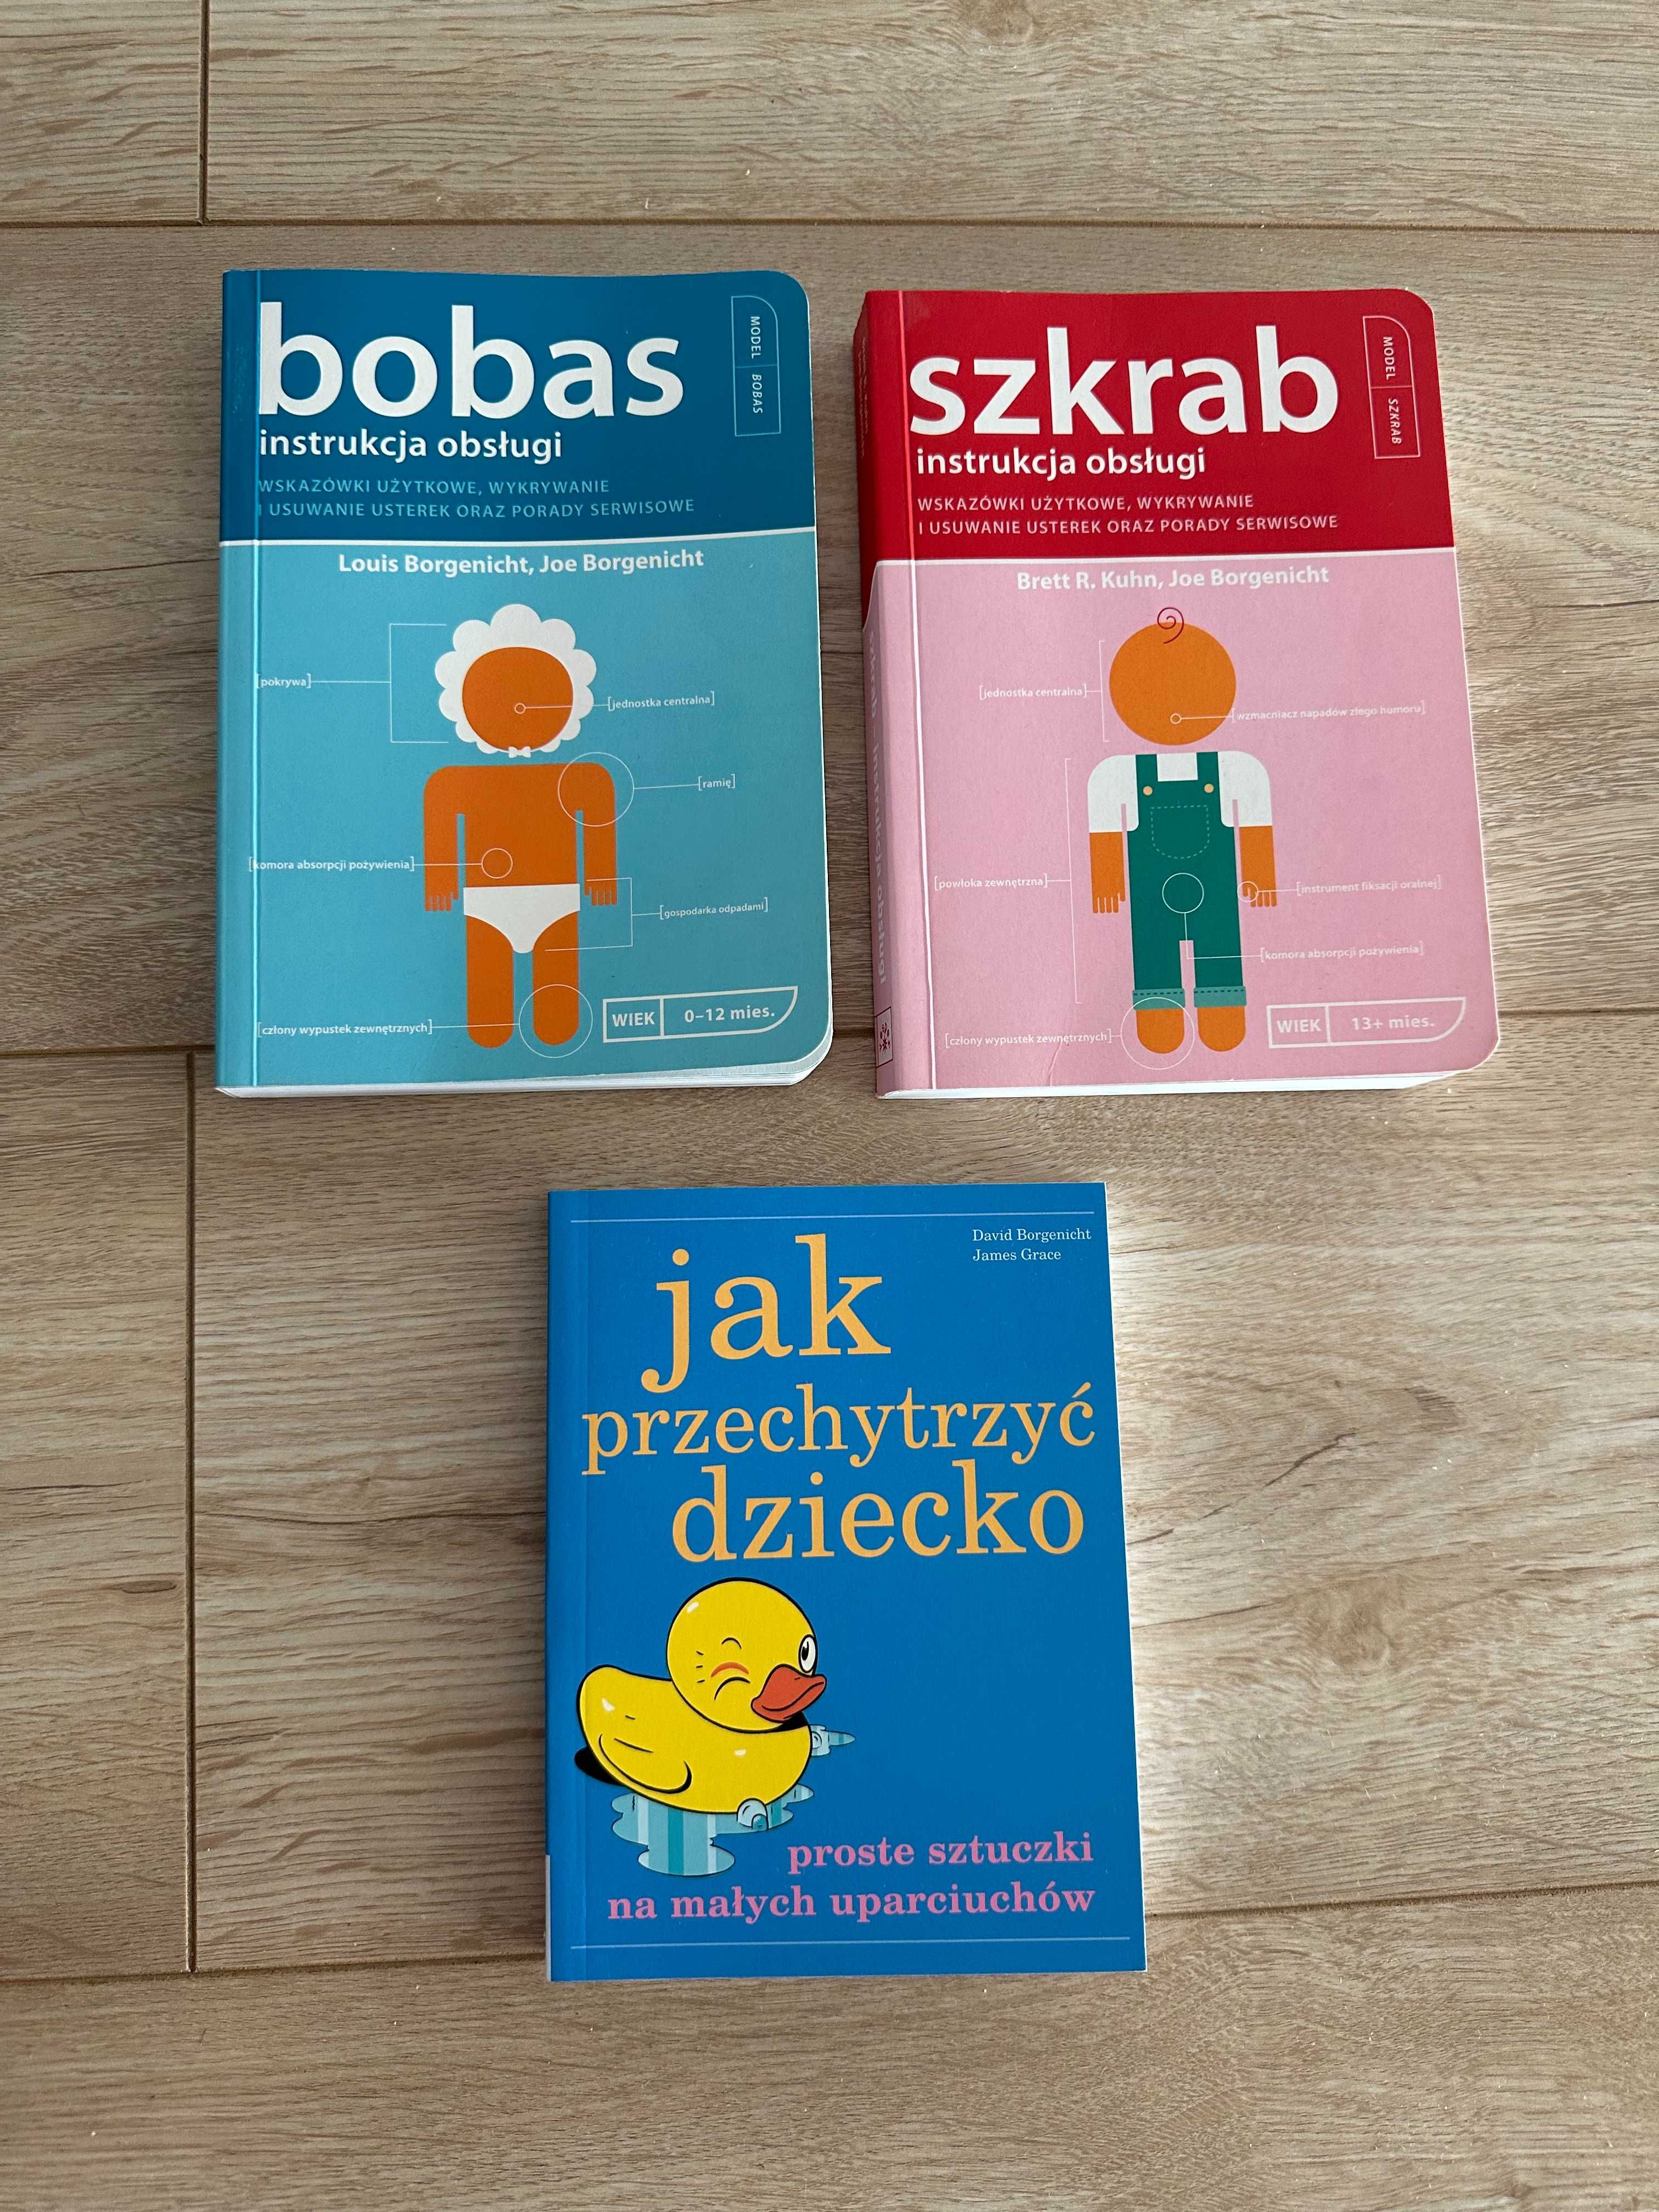 zestaw książek książka bobas szkrab dziecko